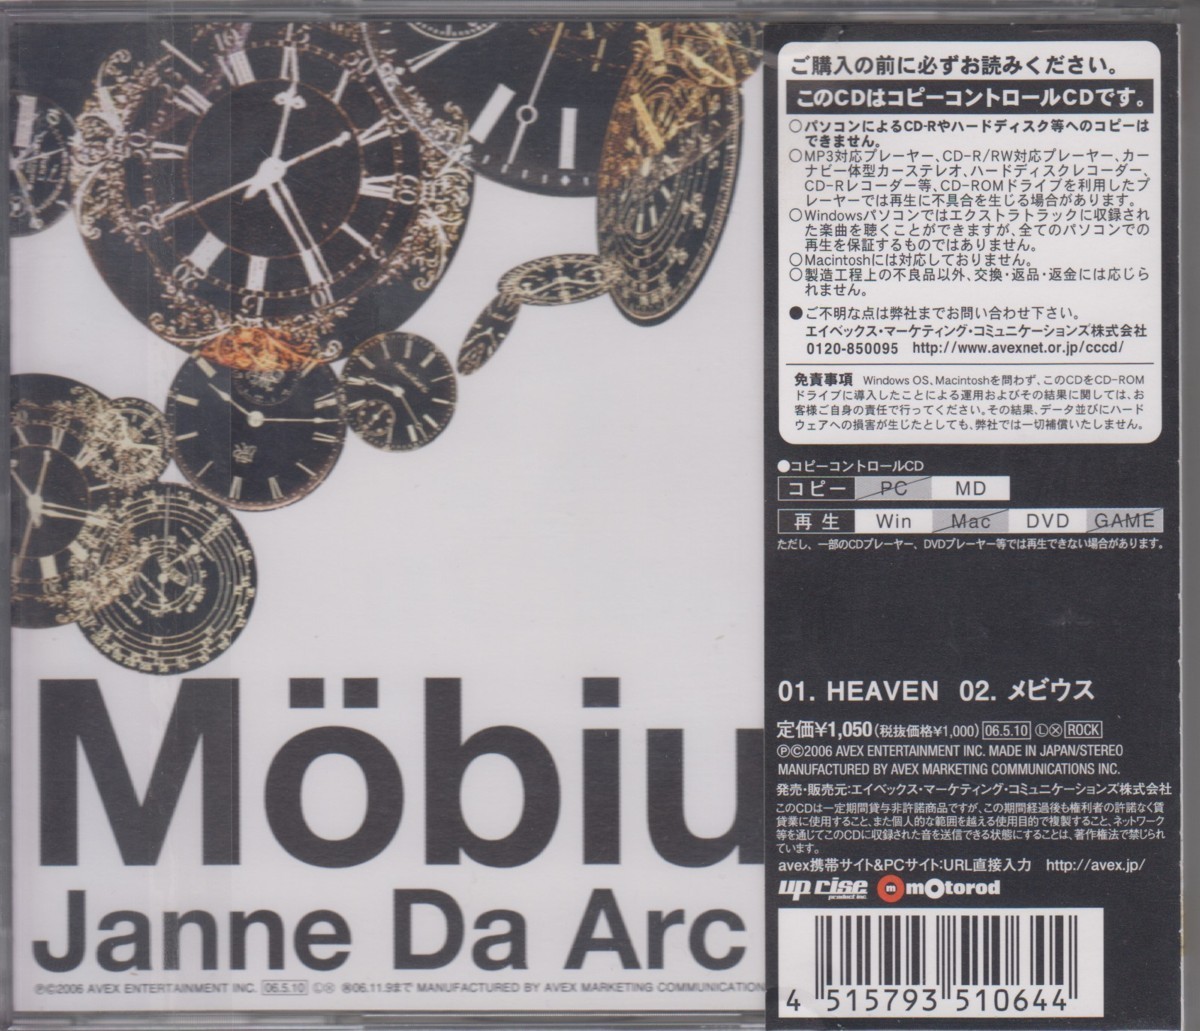 Janne Da Arc ジャンヌダルク　/ HEAVEN / メビウス [コピーコントロールCD]【CD Single】★ 中古盤 /210601_画像2